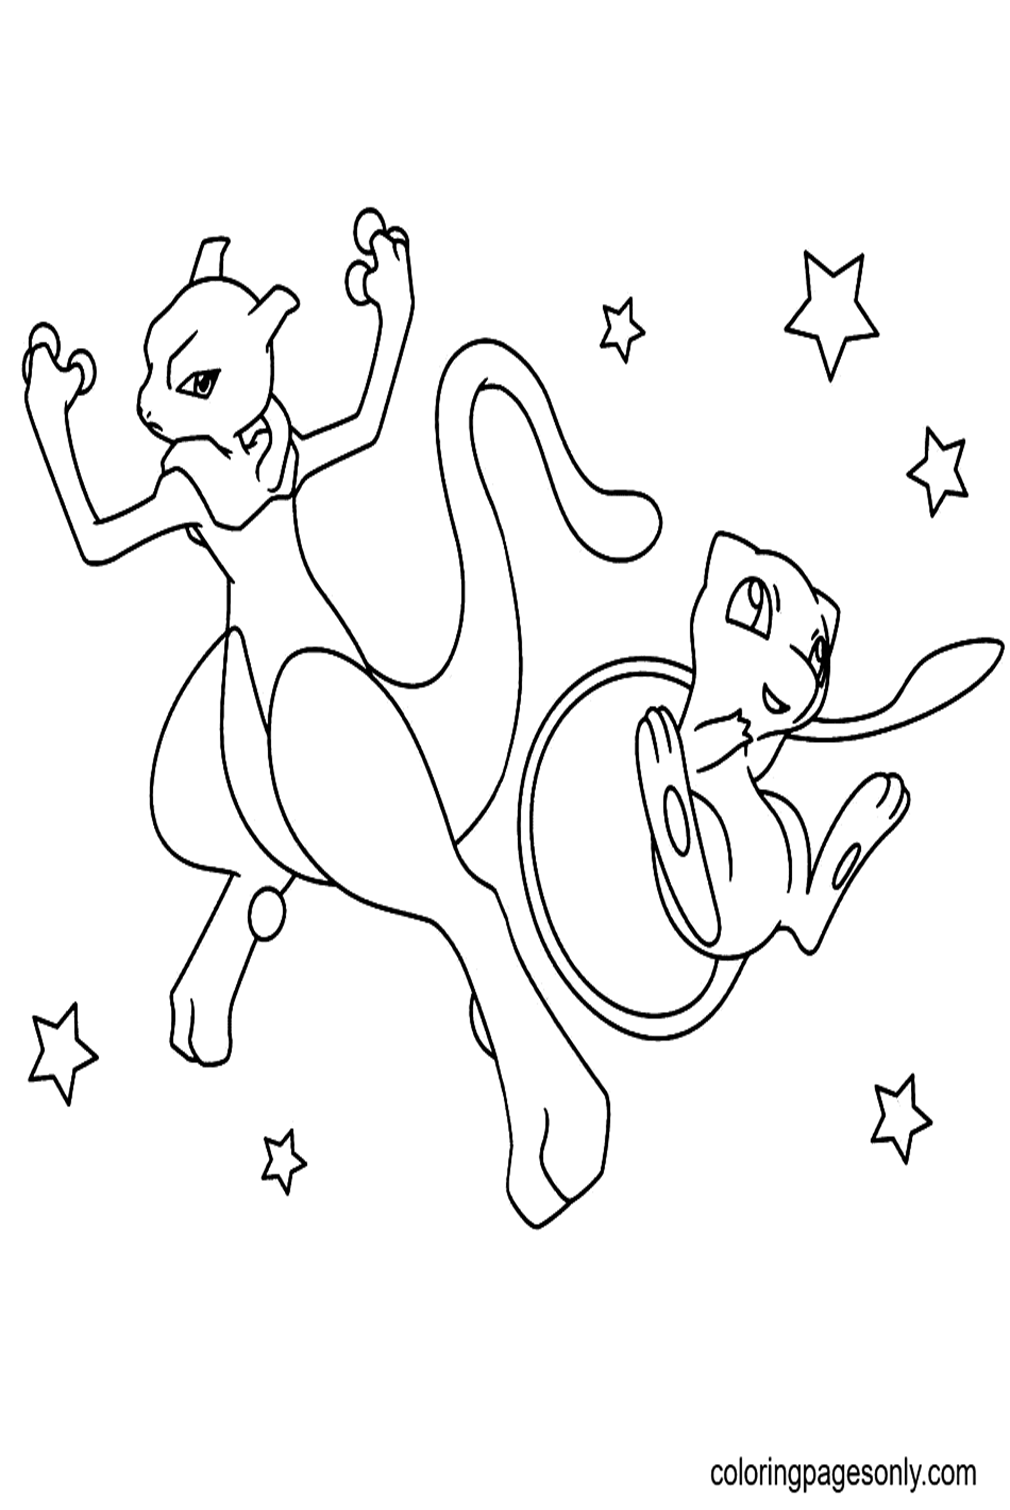 Desenhos para colorir de Pokémon Mew e Mewtwo - Desenhos para colorir  gratuitos para impressão